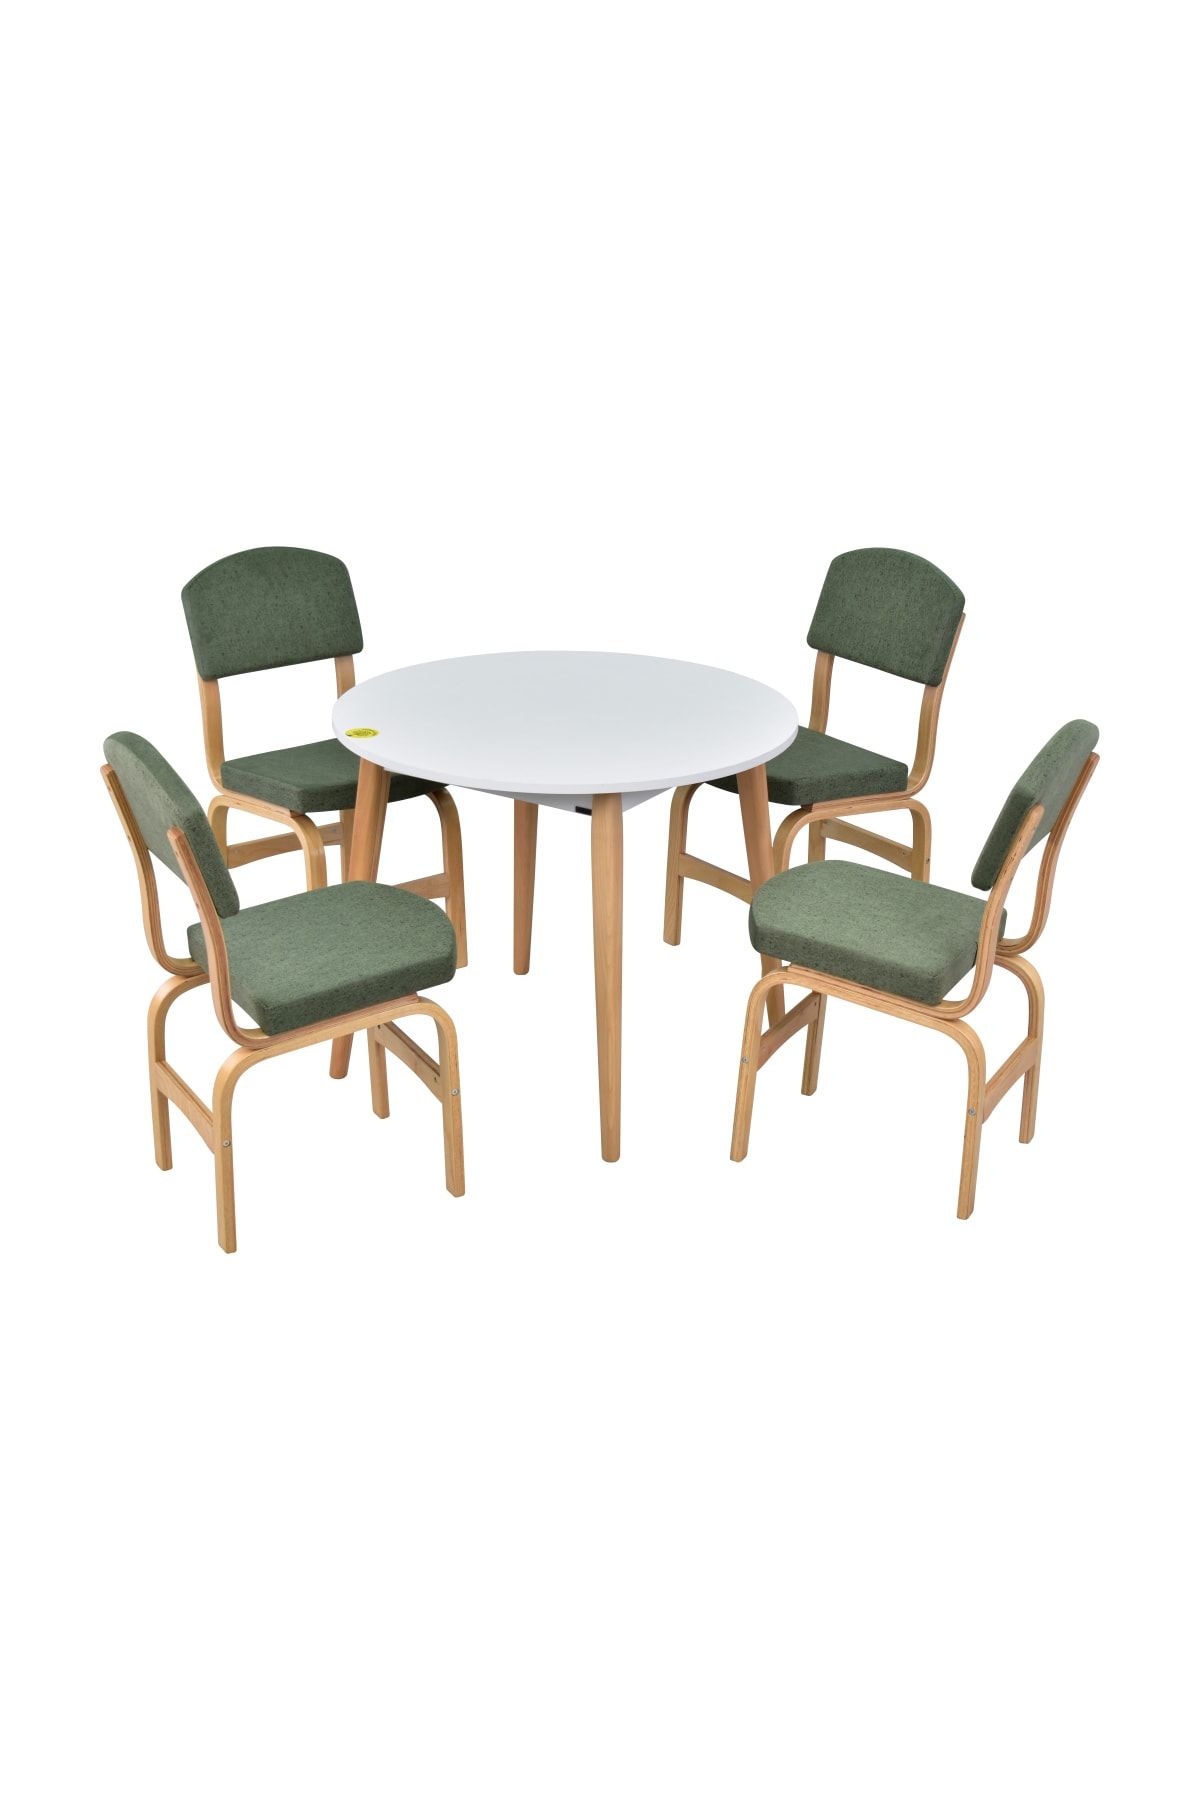 VİLİNZE Ege Sandalye Avanos Yuvarlak Ahşap Mutfak Masası Takımı - 90x90 Cm